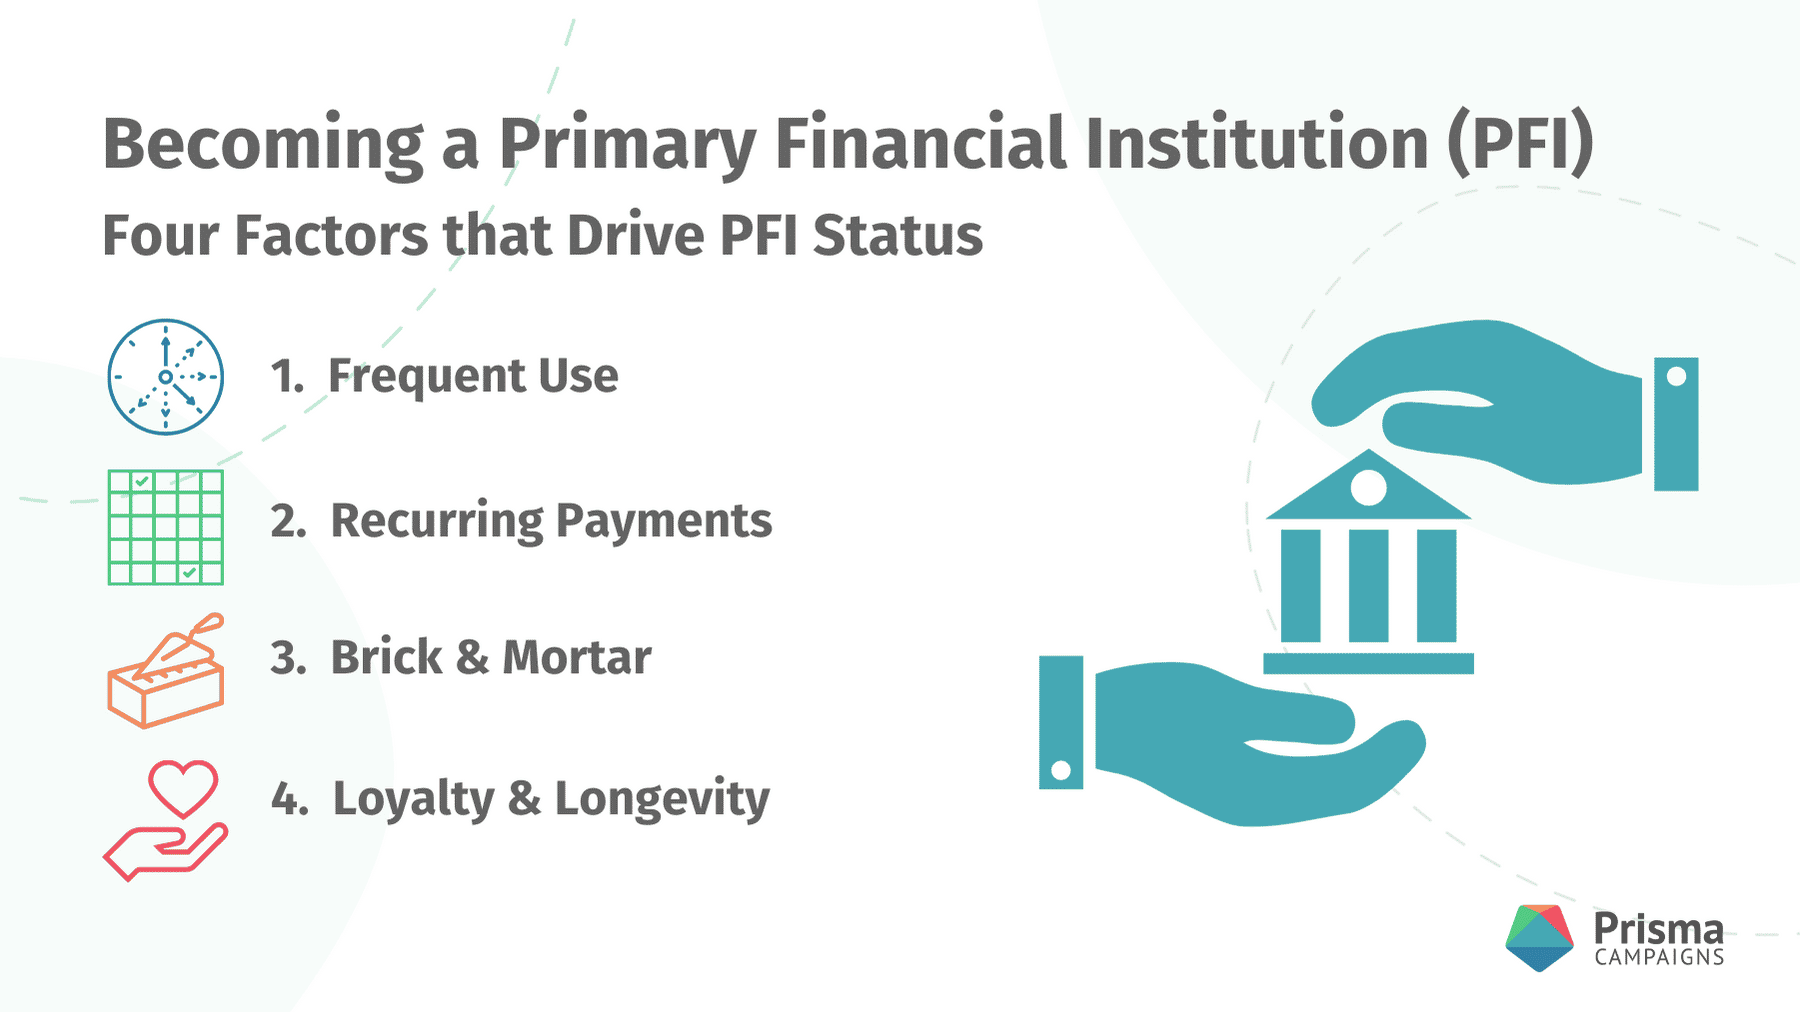 Factors that Drive PFI Status